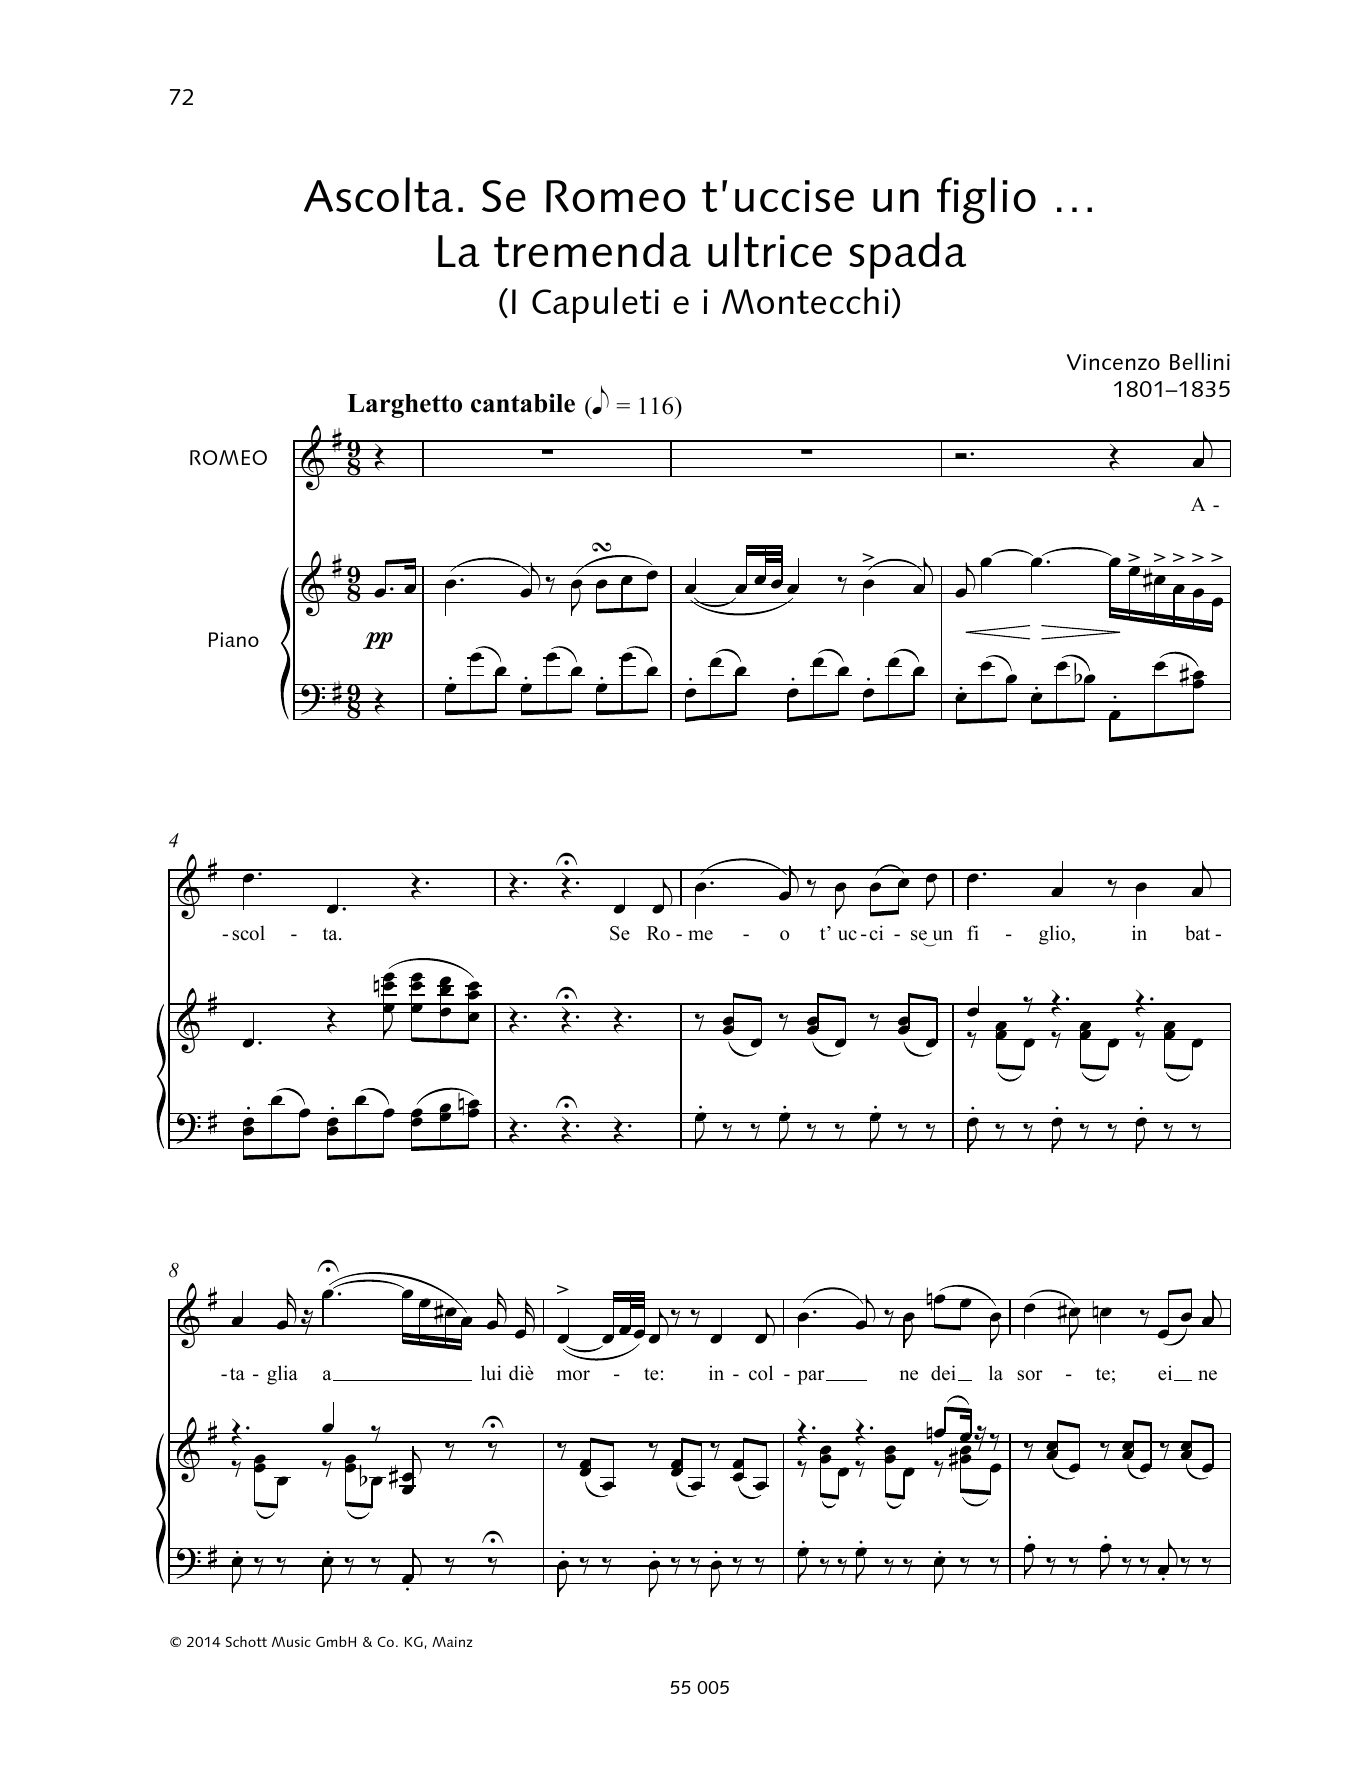 Vincenzo Bellini Ascolta. Se Romeo t'uccise un figlio... La tremenda ultrice spada sheet music notes and chords arranged for Piano & Vocal